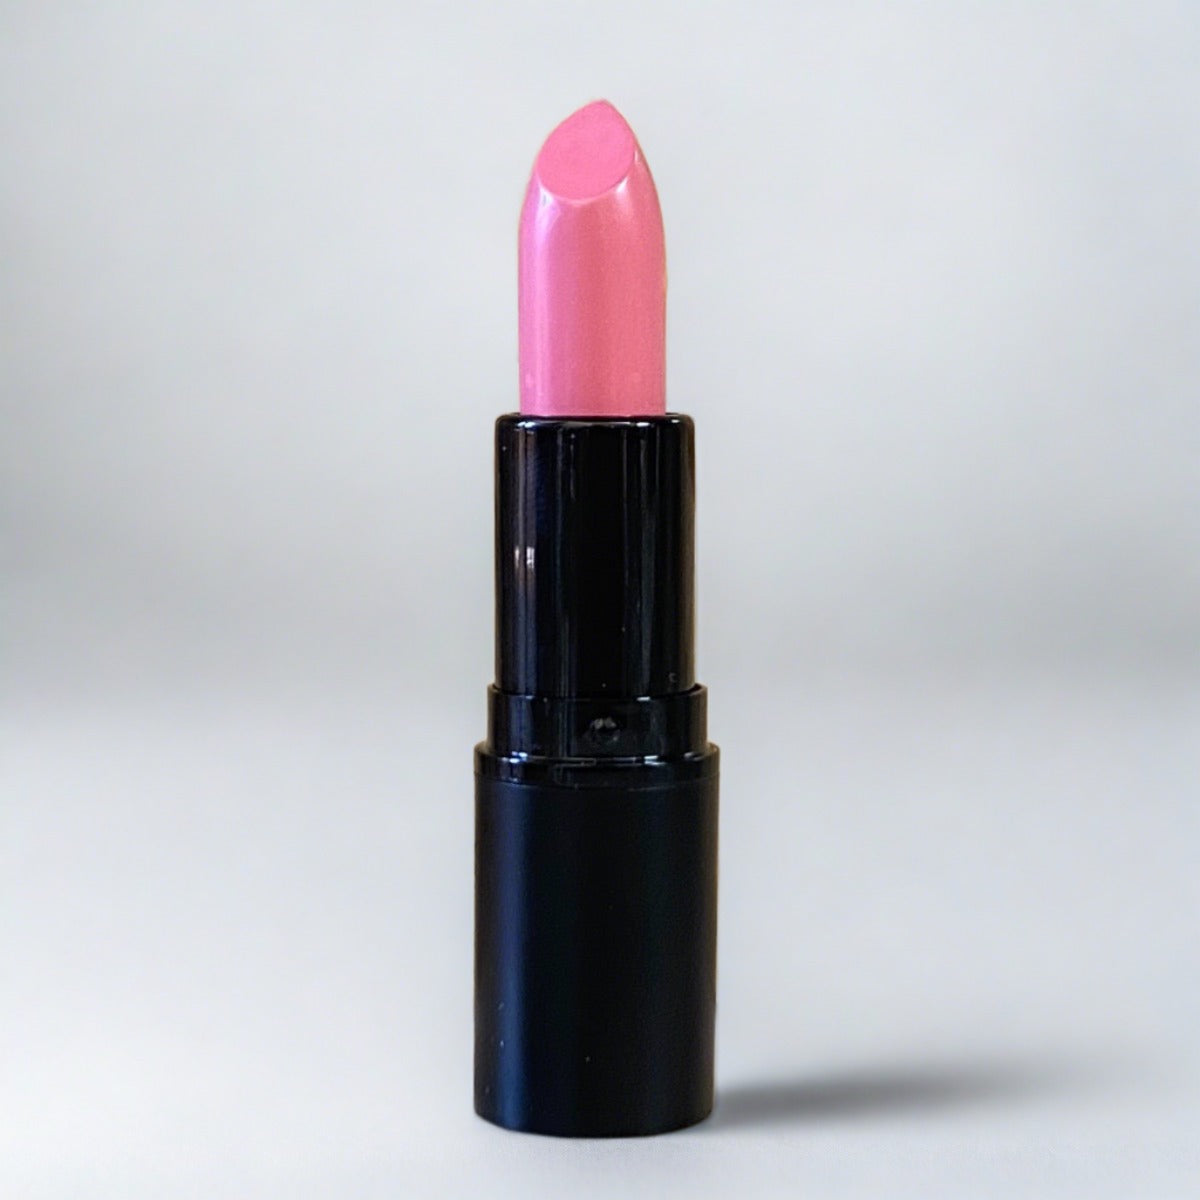 Creamy, matte finish, bright pink lipstick